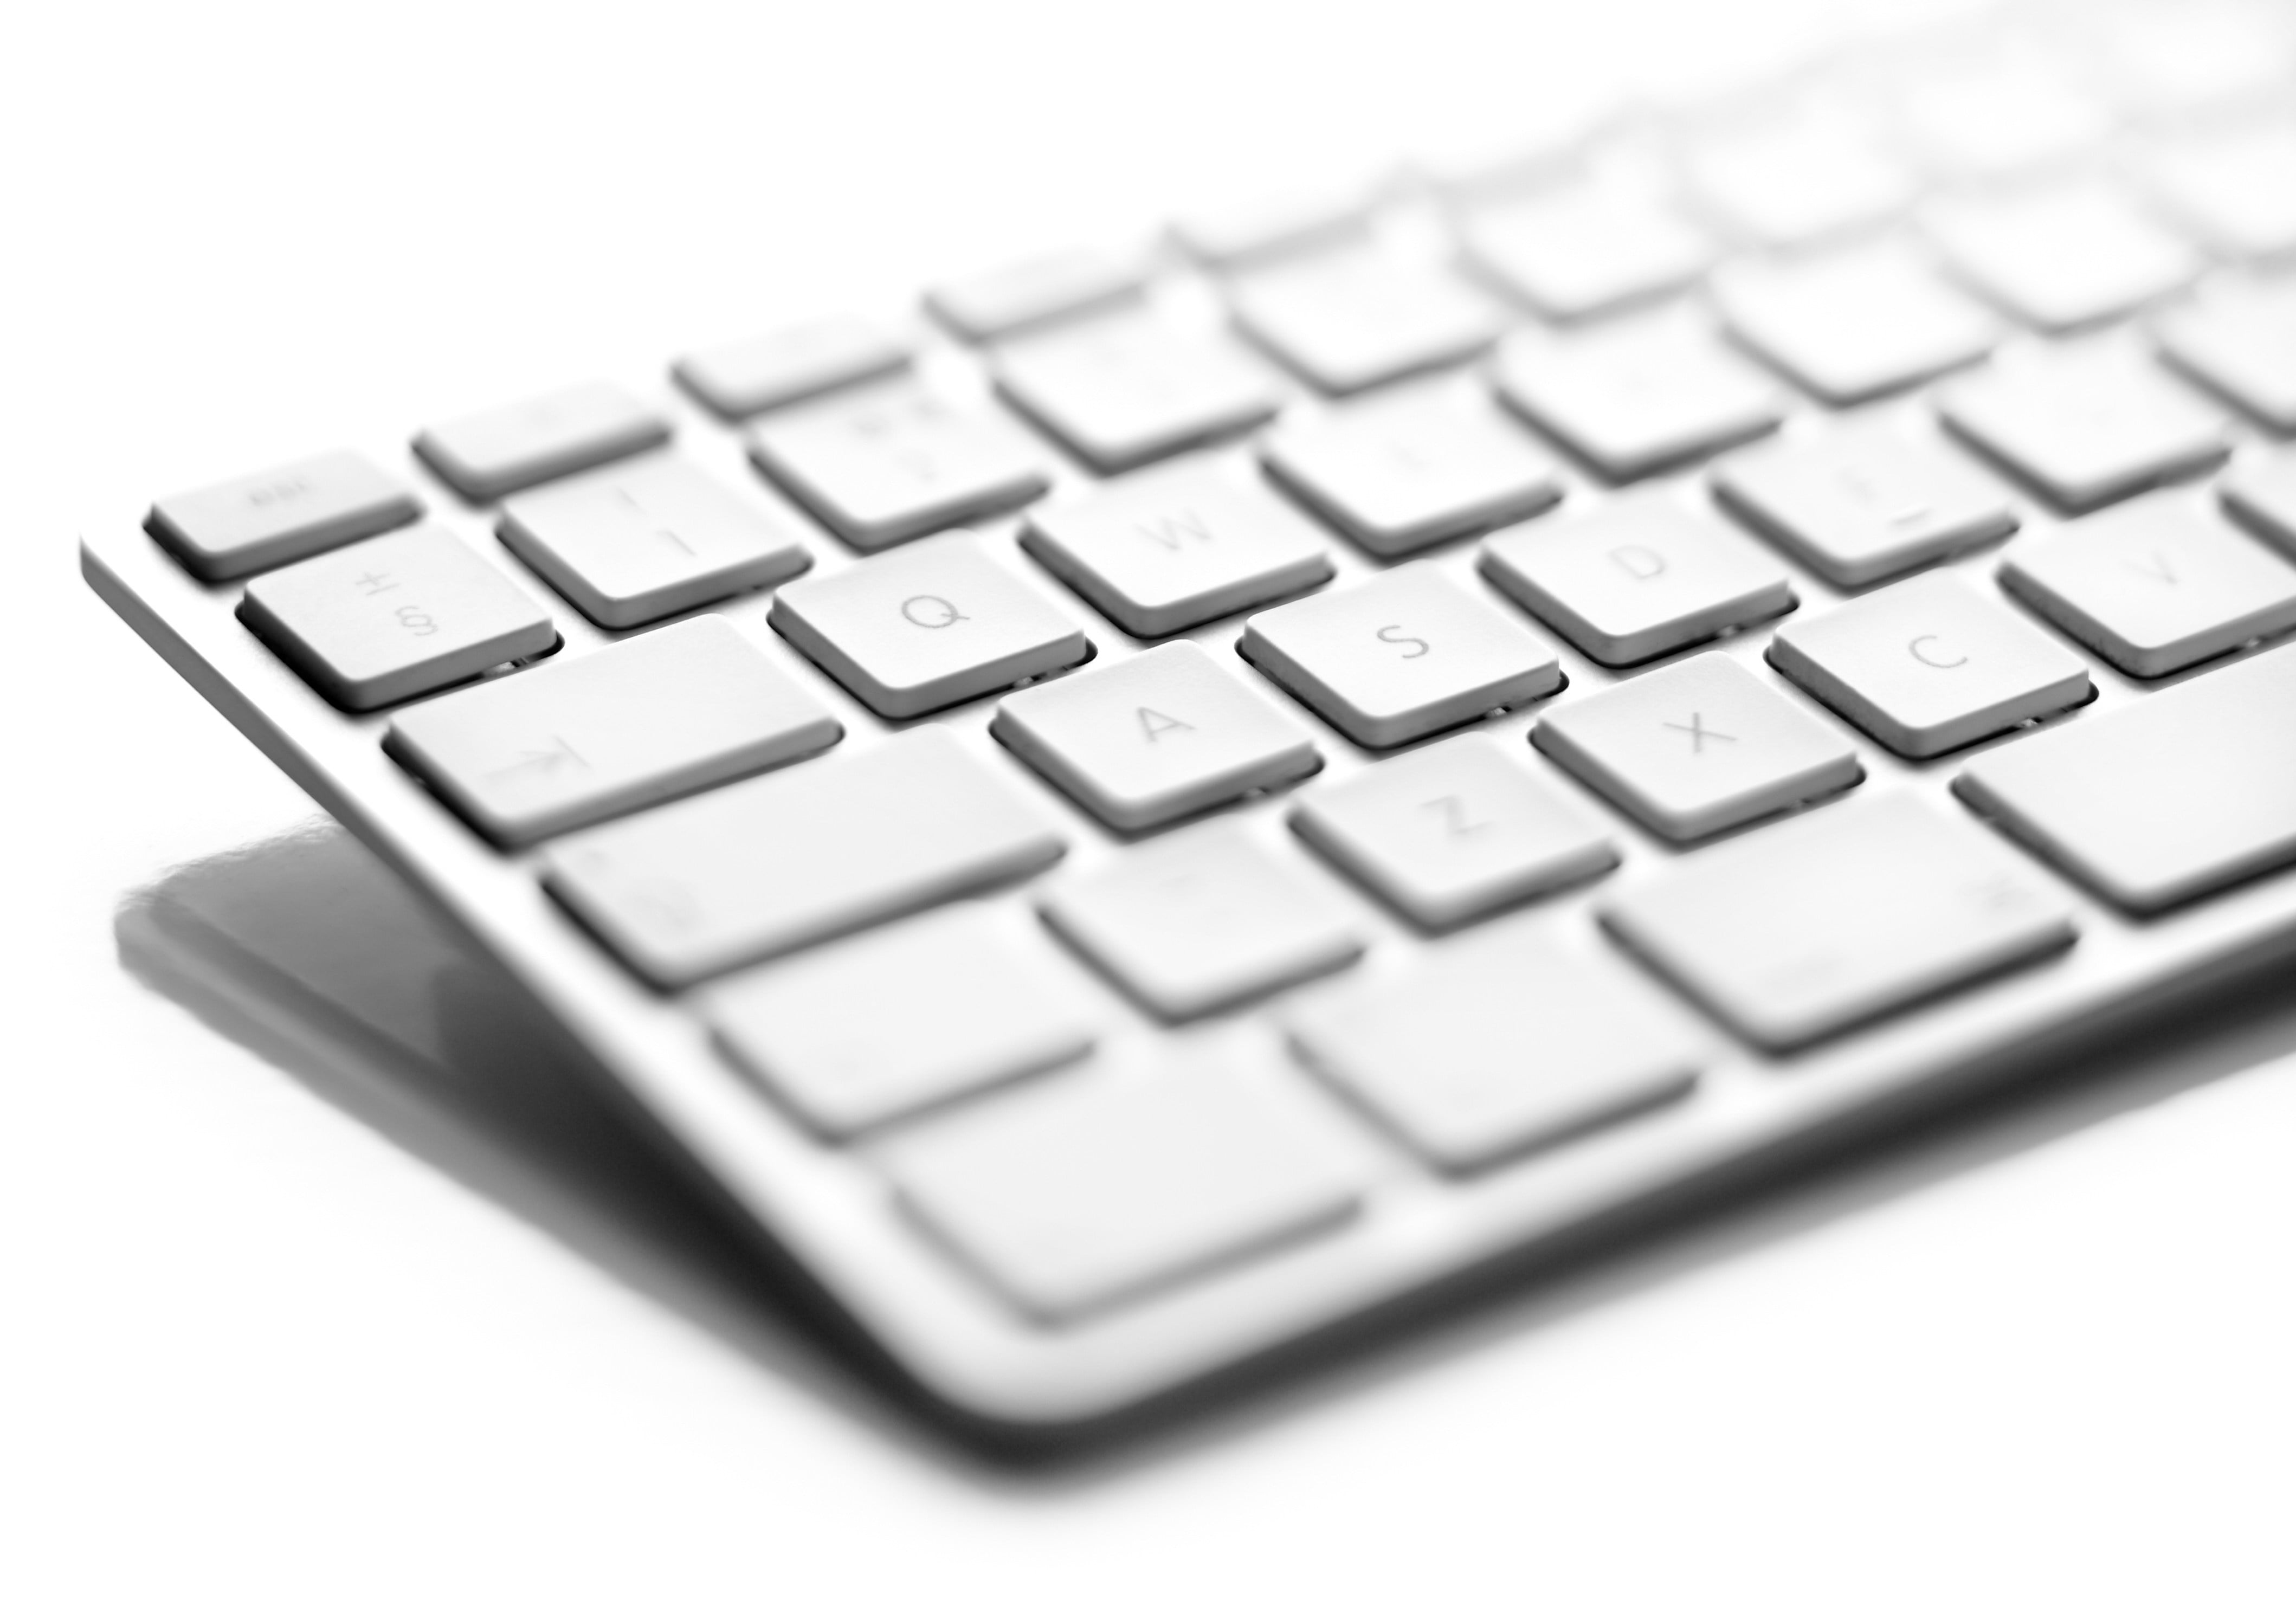 silver wireless keyboard